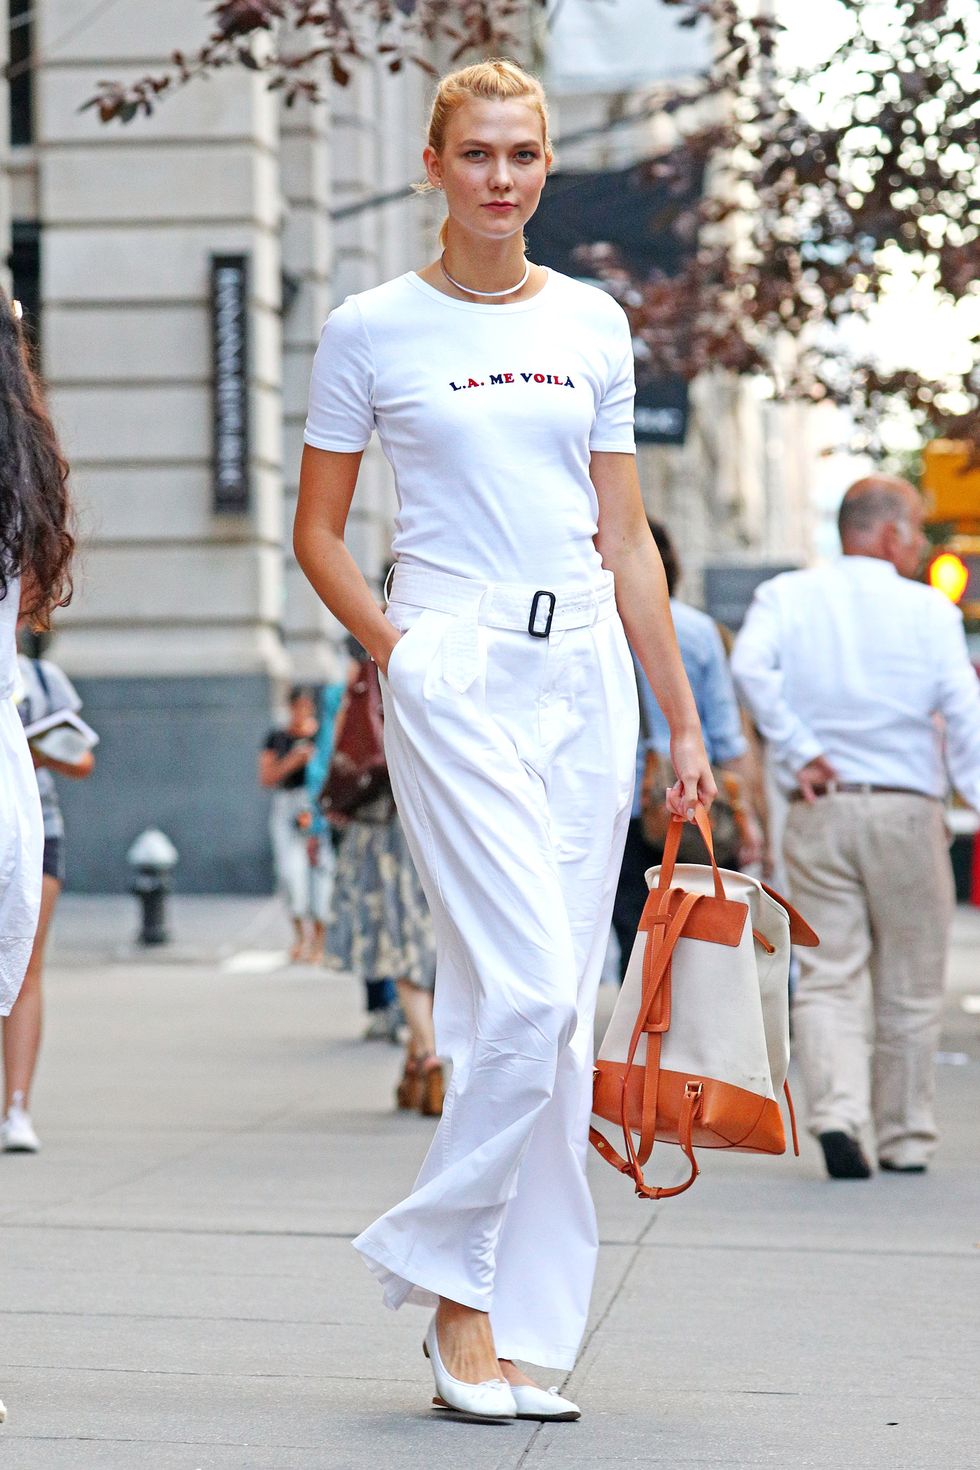 <p><strong>Dove:</strong> per le vie di New York </p><p><strong>Perchè:</strong> <a href="http://www.elle.com/it/benessere/fitness/consigli/g1099/karlie-kloss-fitness-routine-foto-adidas-stella-mccartney/">Karlie Kloss</a> ripropone il colore dell'estate in maniera easy indossando un elegante gonna lunga con una t-shirt con le scritte, total white.</p>